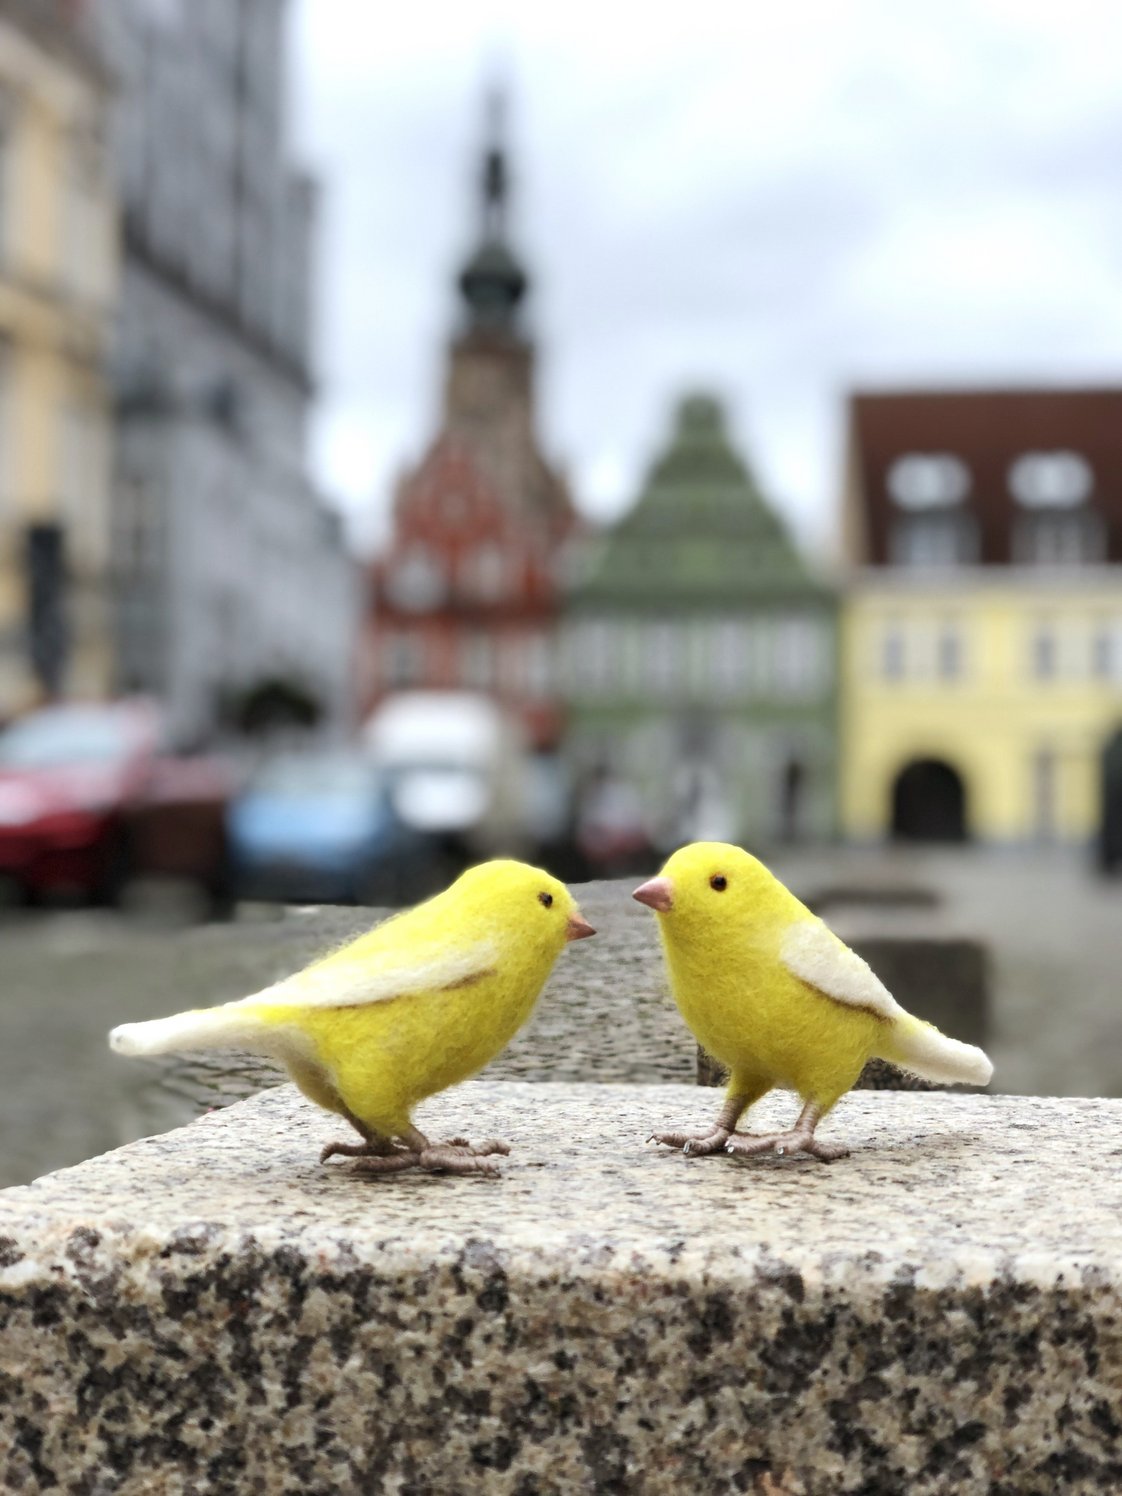 Roman & Tik sitzen auf einer steinernen Basis. Im Hintergrund farbige Giebelhäuser und der Turm des Greifswalder Doms